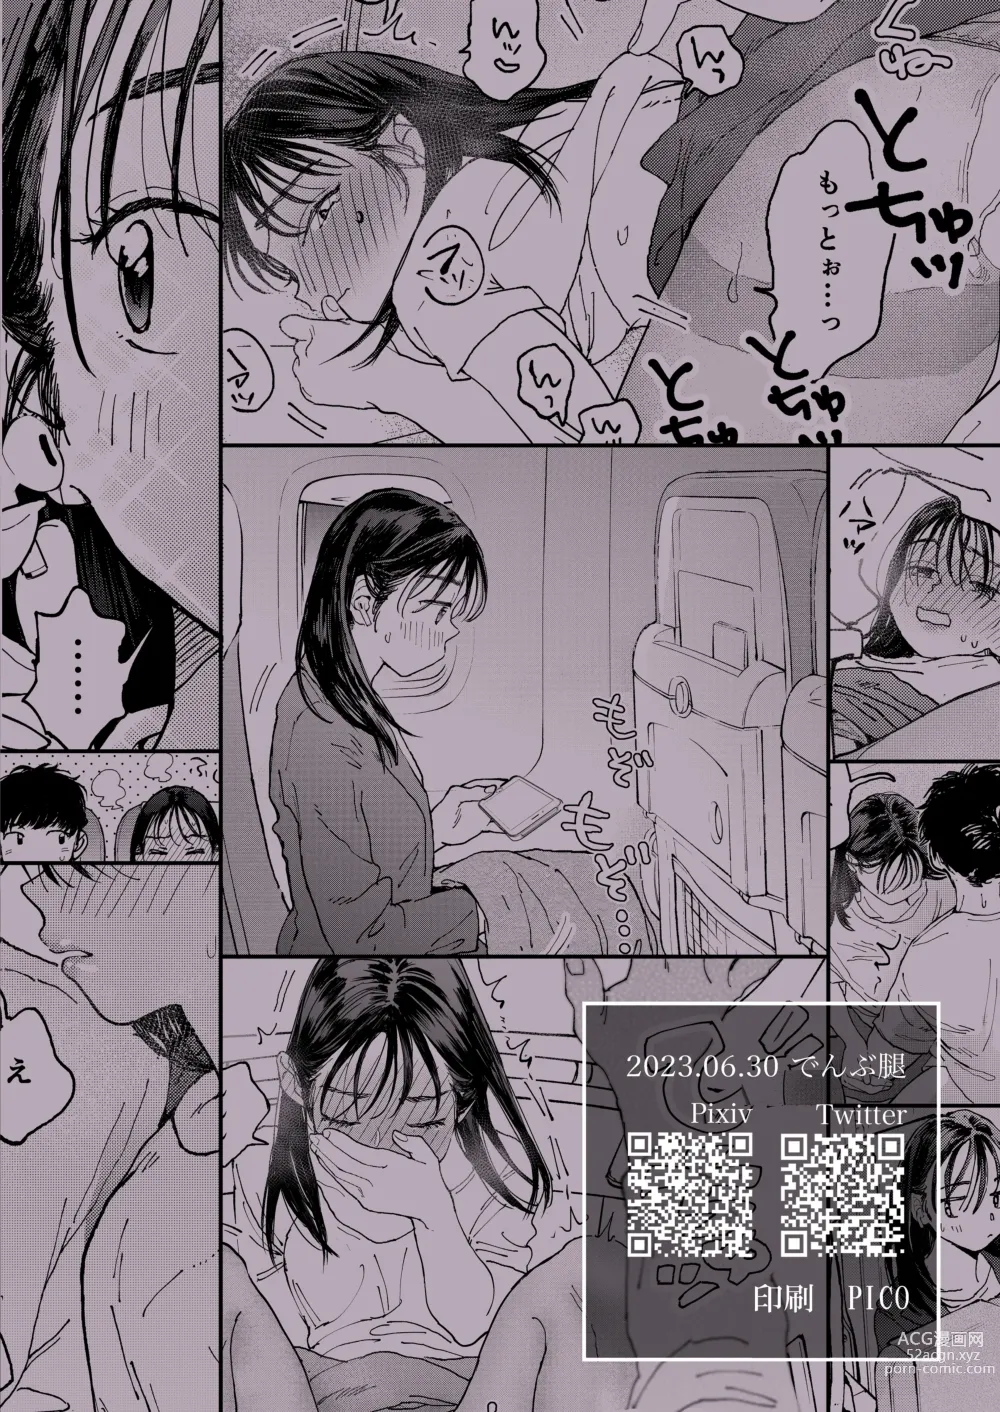 Page 49 of doujinshi 발정난 OL은 비행기 안에서도 성욕을 채우고 싶다